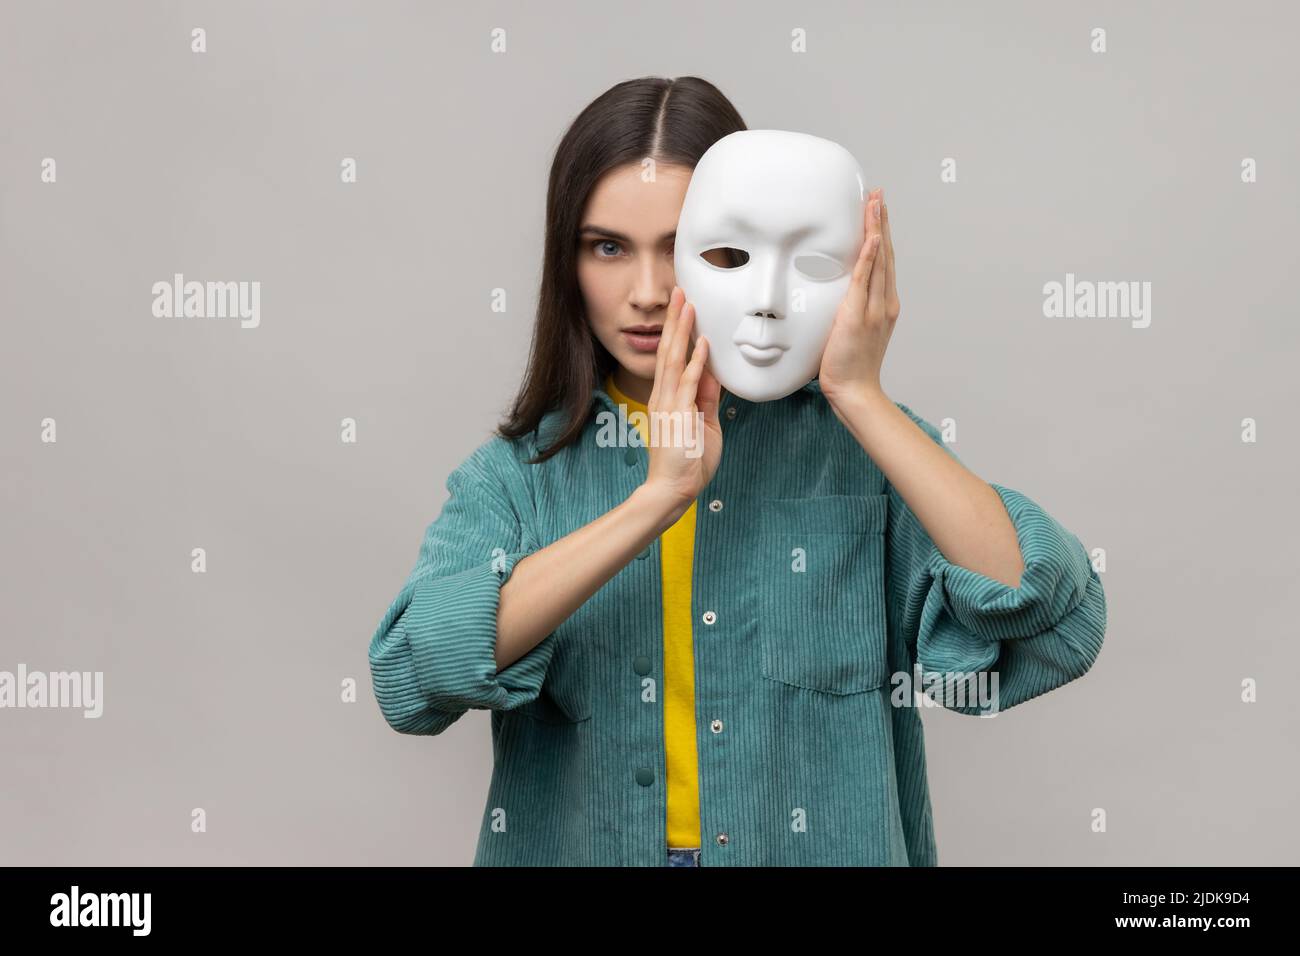 Porträt einer streng herrisch Frau, die die Hälfte des Gesichts mit einer weißen Maske bedeckt, mehrere Persönlichkeitsstörungen und eine Jacke im lässigen Stil trägt. Innenaufnahme des Studios isoliert auf grauem Hintergrund. Stockfoto